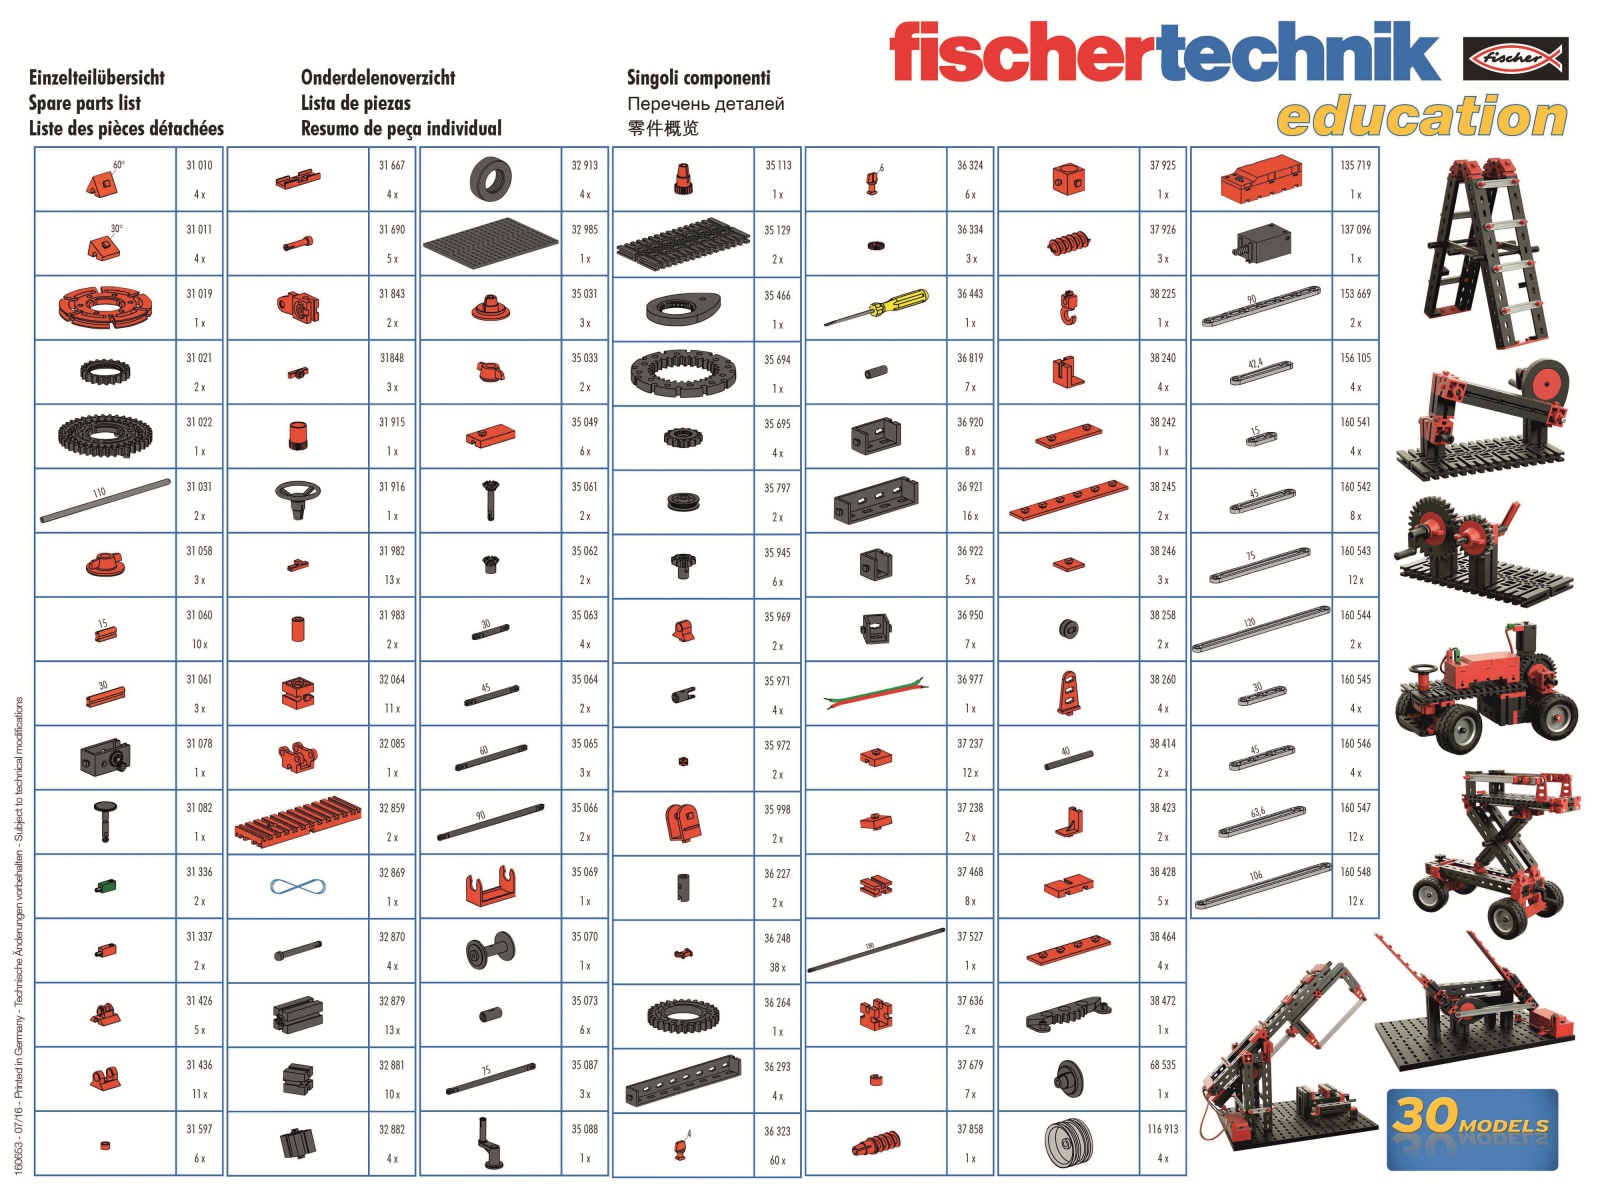 FISCHERTECHNIK Education, 538423, Mechanics (2.0)